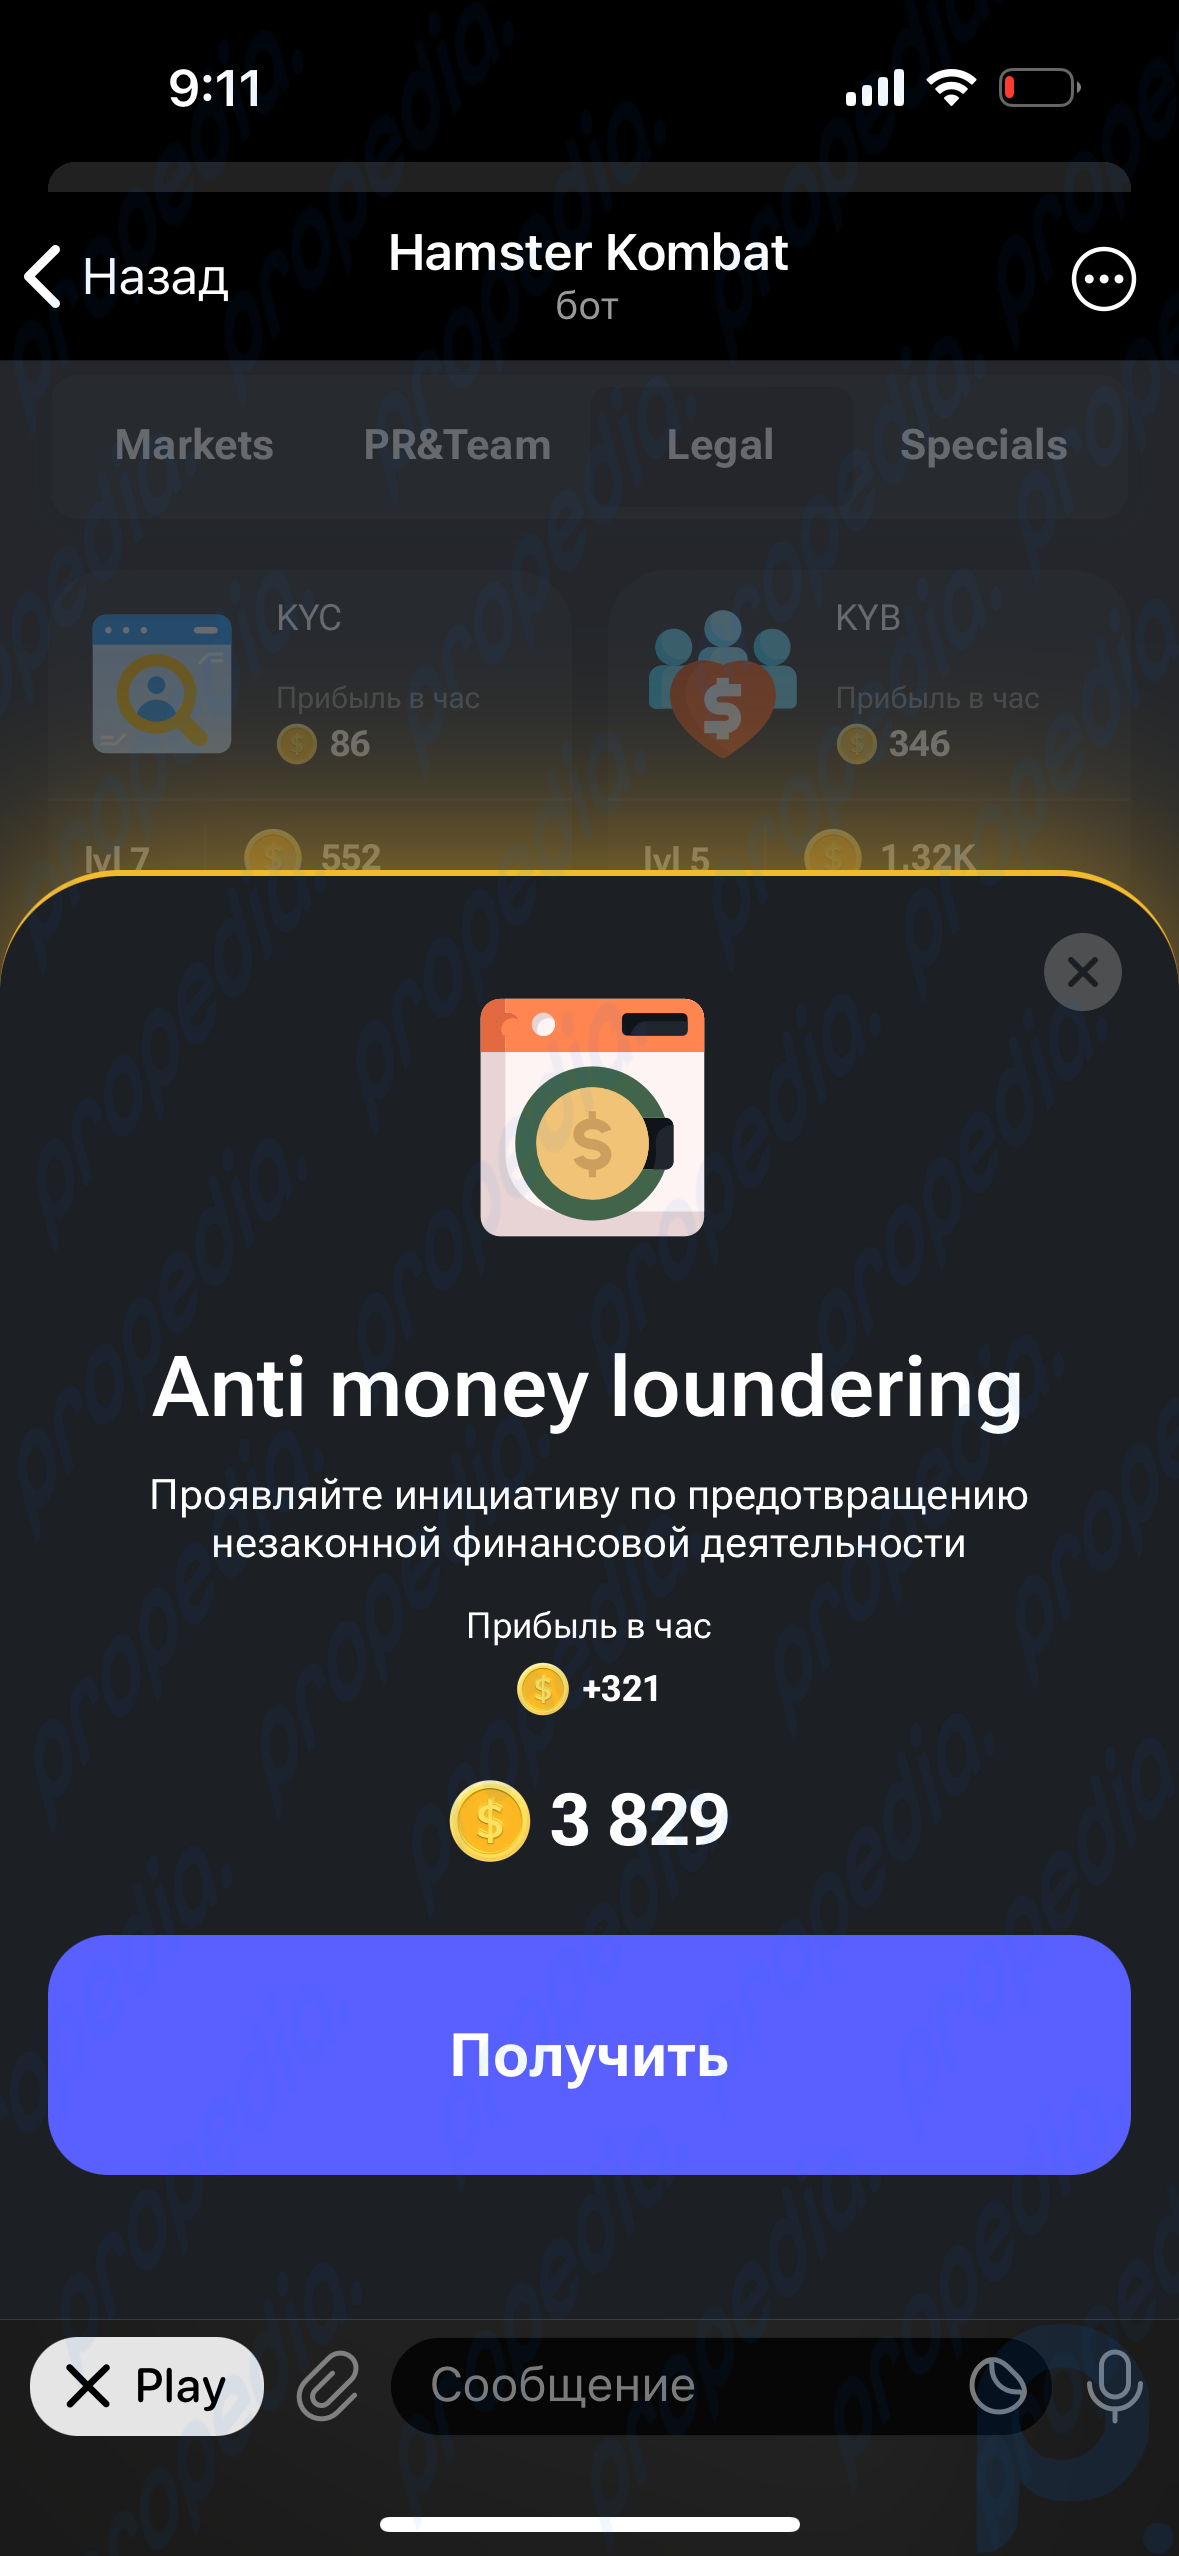 Hamster Kombat とは何ですか? 誰もが金持ちになることを望んでいる Telegram のゲームです。 